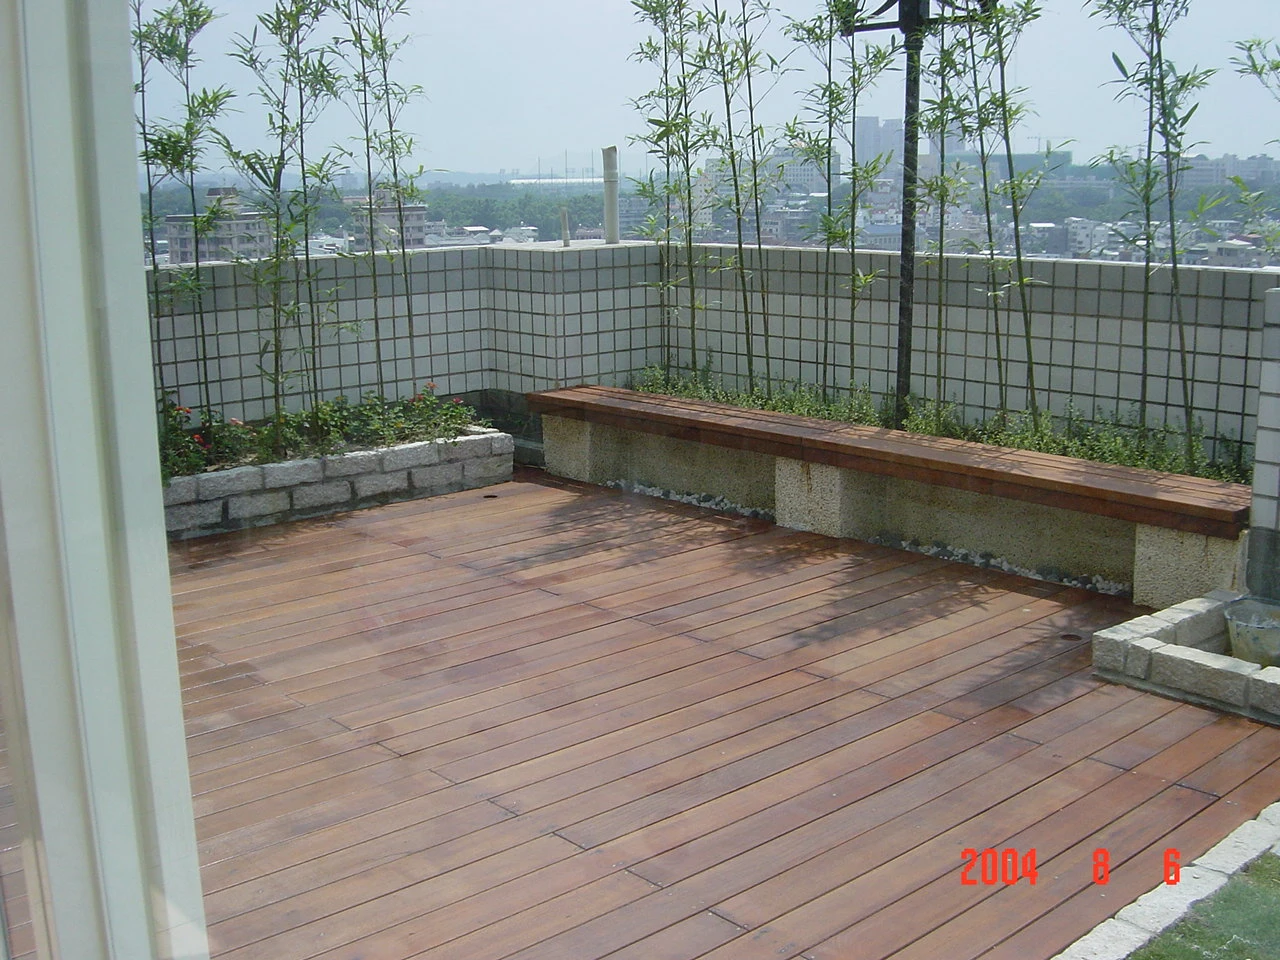 木造涼亭花架木平台設計施工維修保養工程